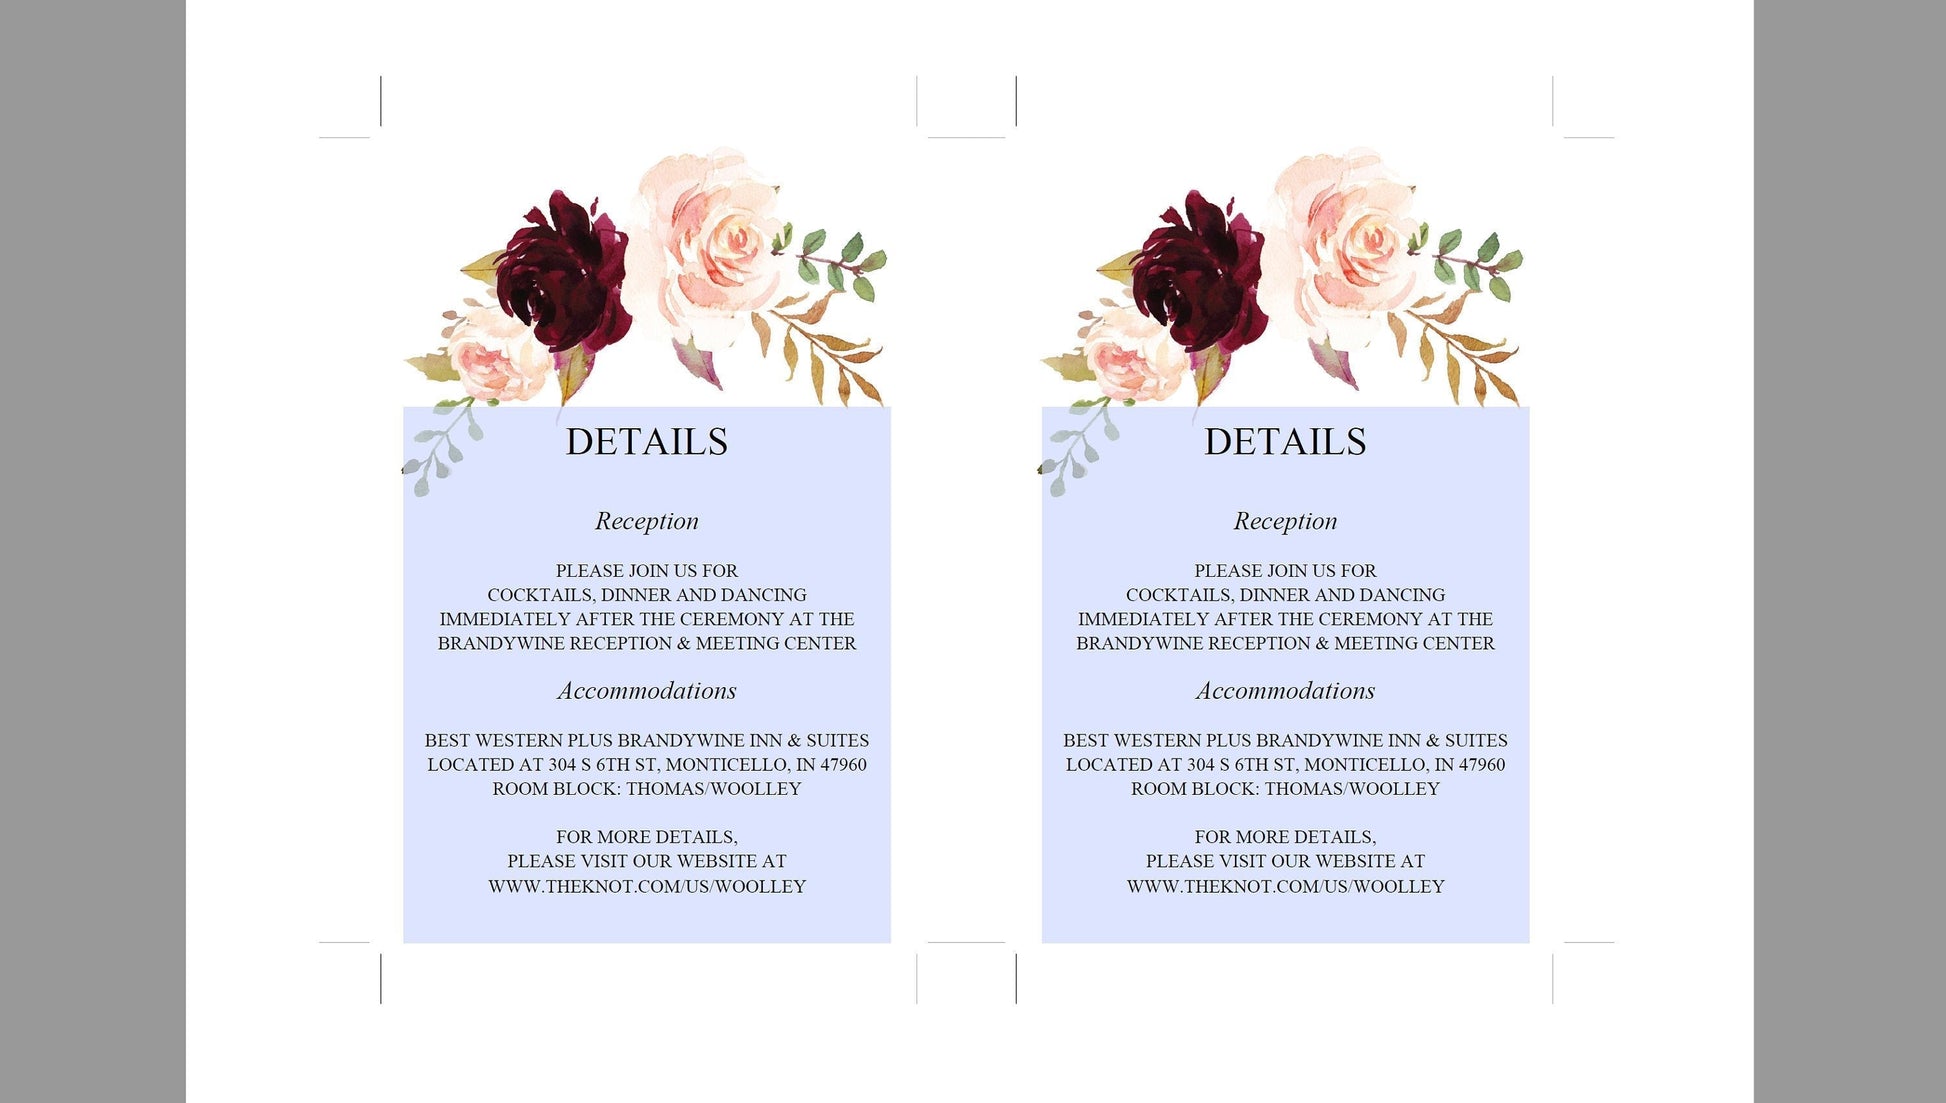 Wedding Details Card Template, Instant Download, Information Card, Wedding Info Card,Details Template, Floral, Burgundy  - KATHERINE RSVP & DETAILS CARDS SAVVY PAPER CO